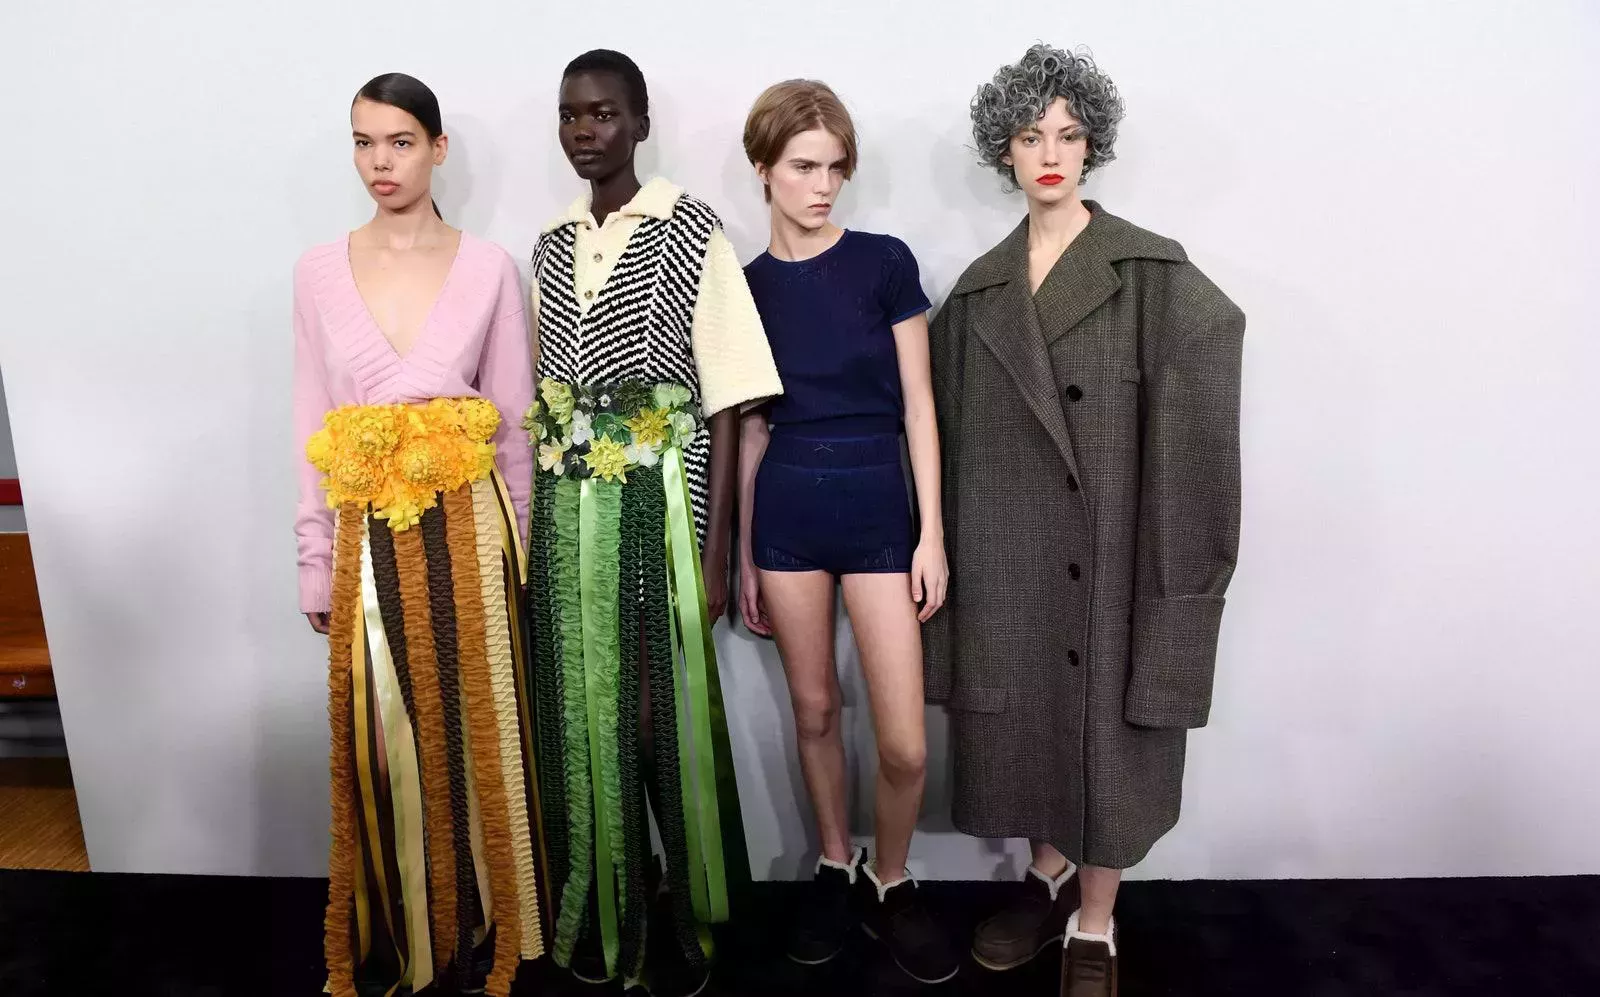 Las modelos canosas de JW Anderson arrasaron en la Semana de la Moda de Londres